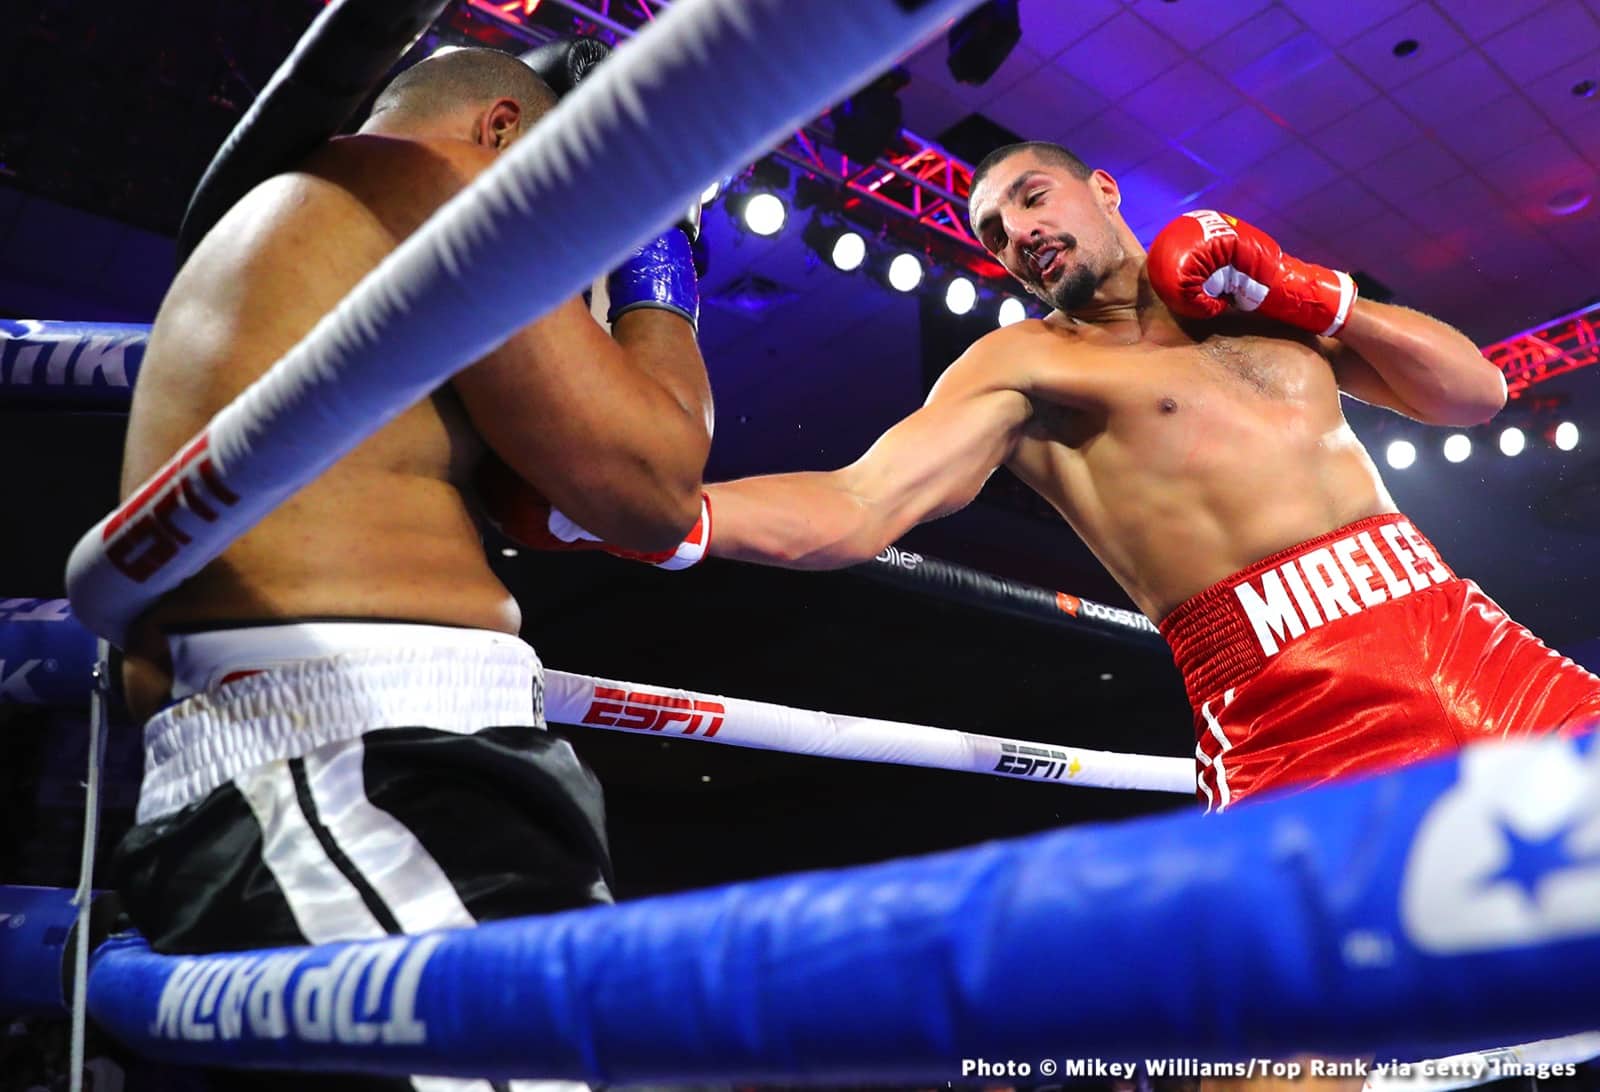 Antonio Mireles boxing image / photo